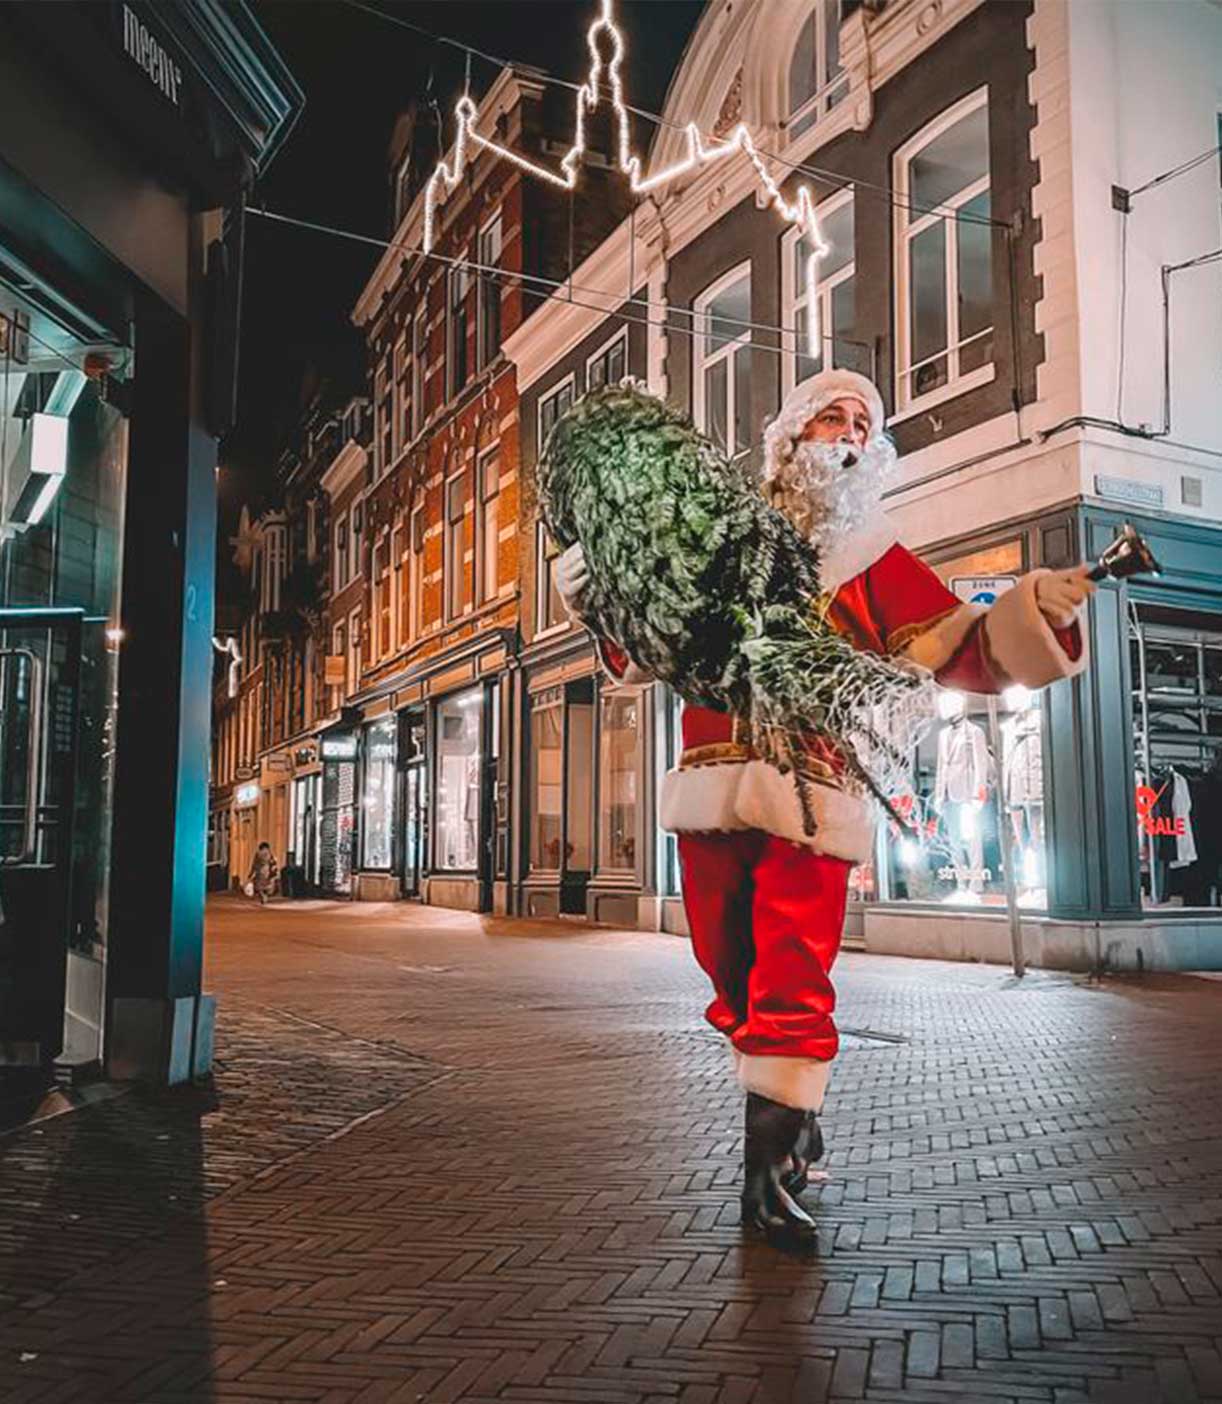 Kerstboom versturen - Nederland